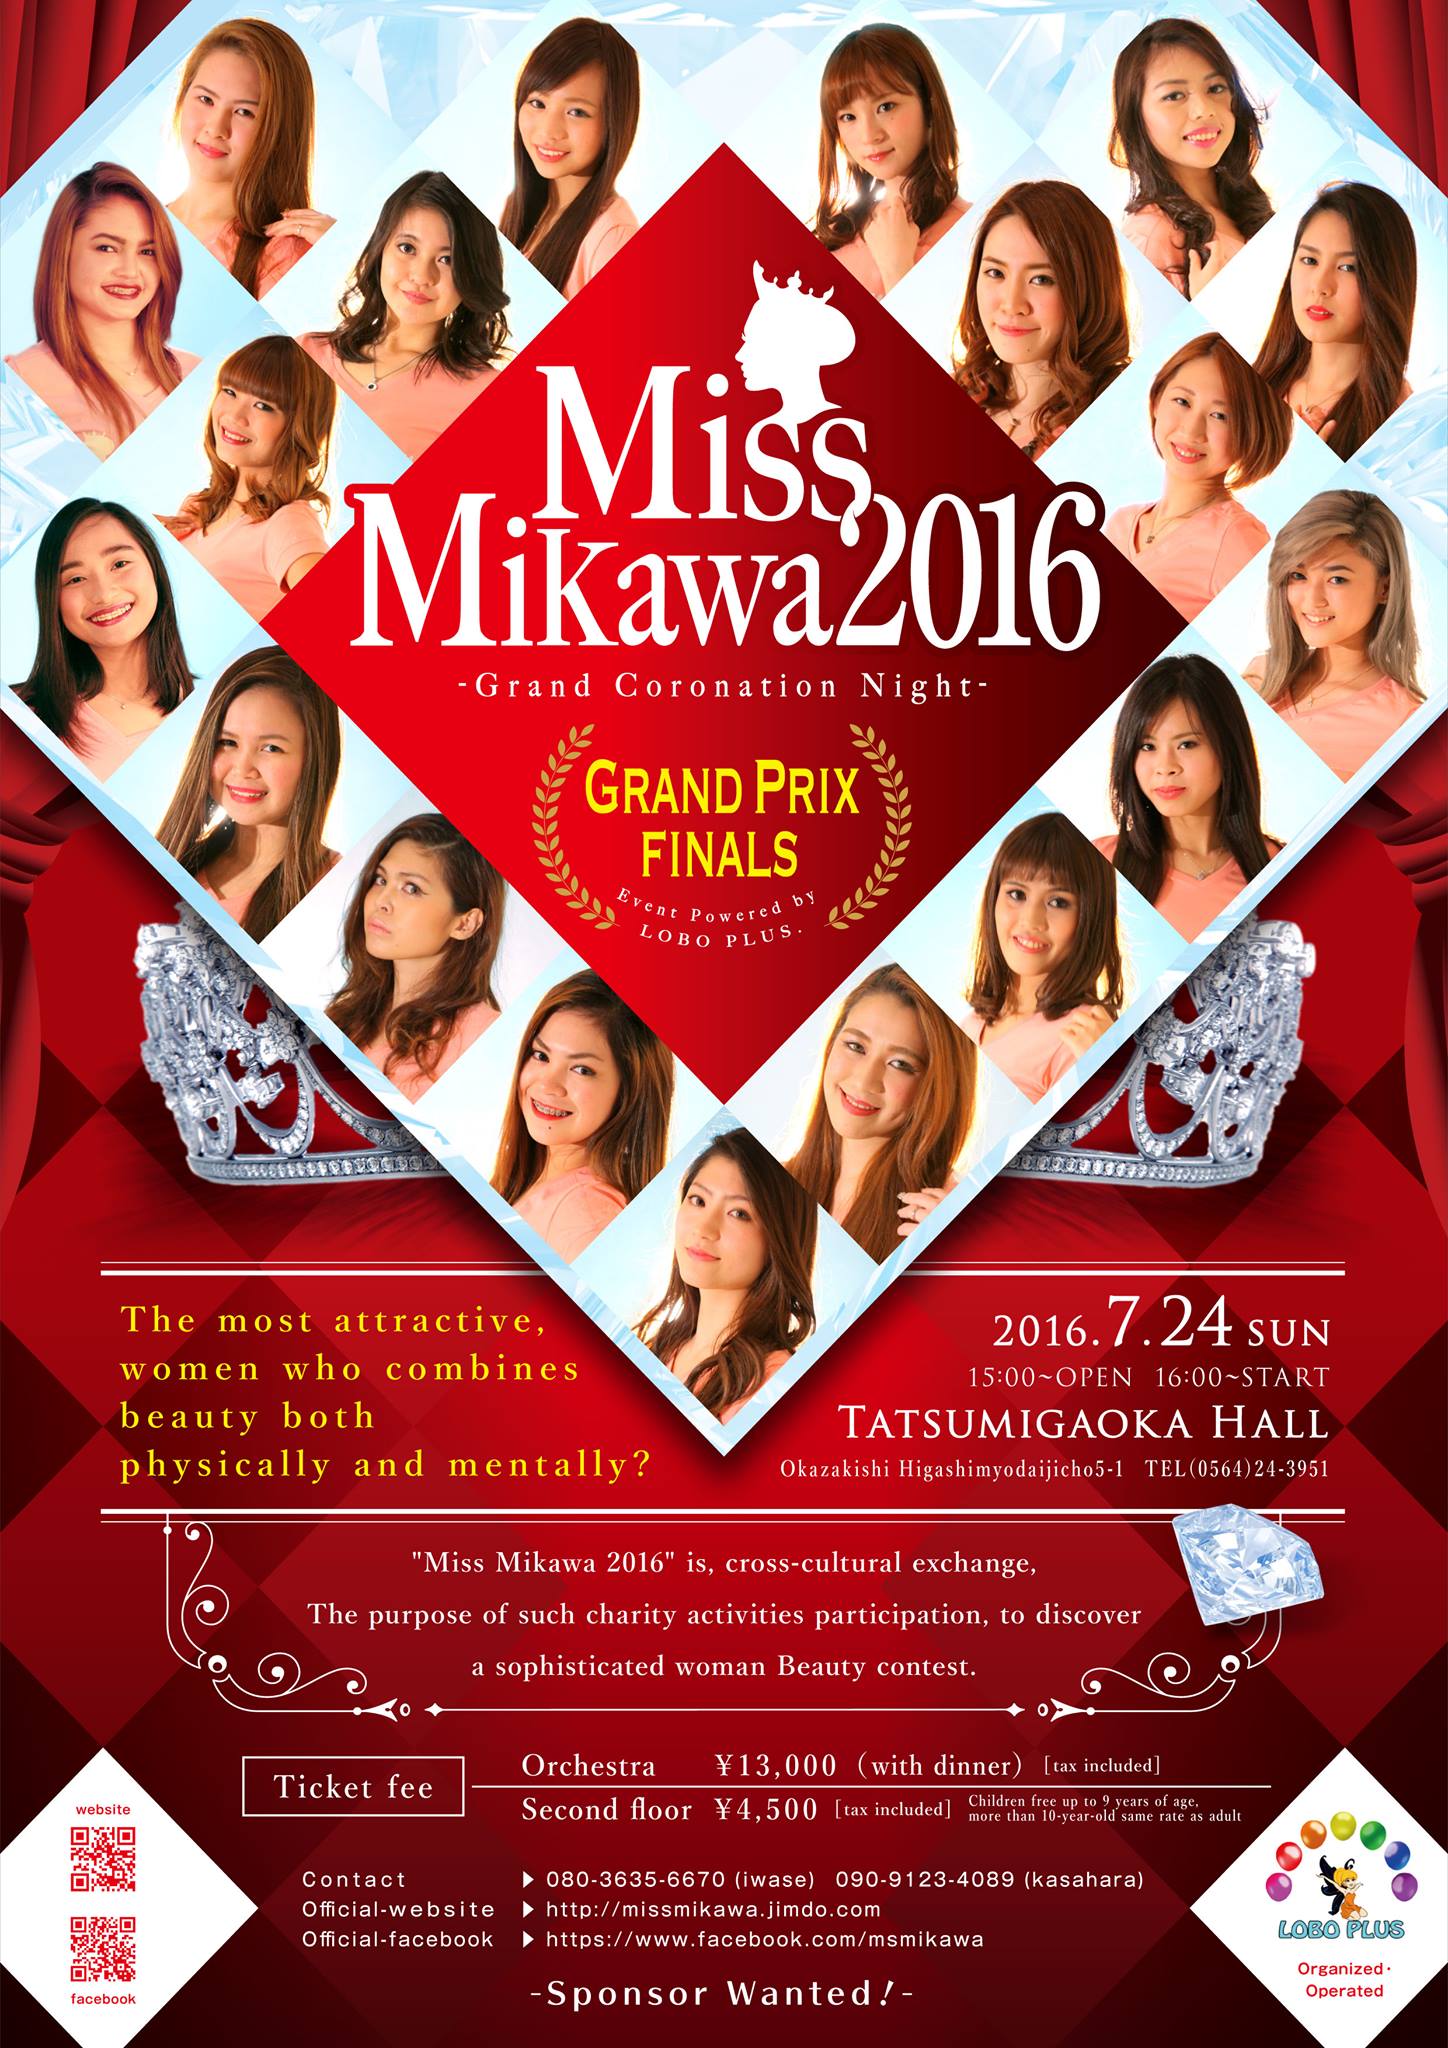 &nbspMiss Mikawa 2016 - Grand Coronation Night